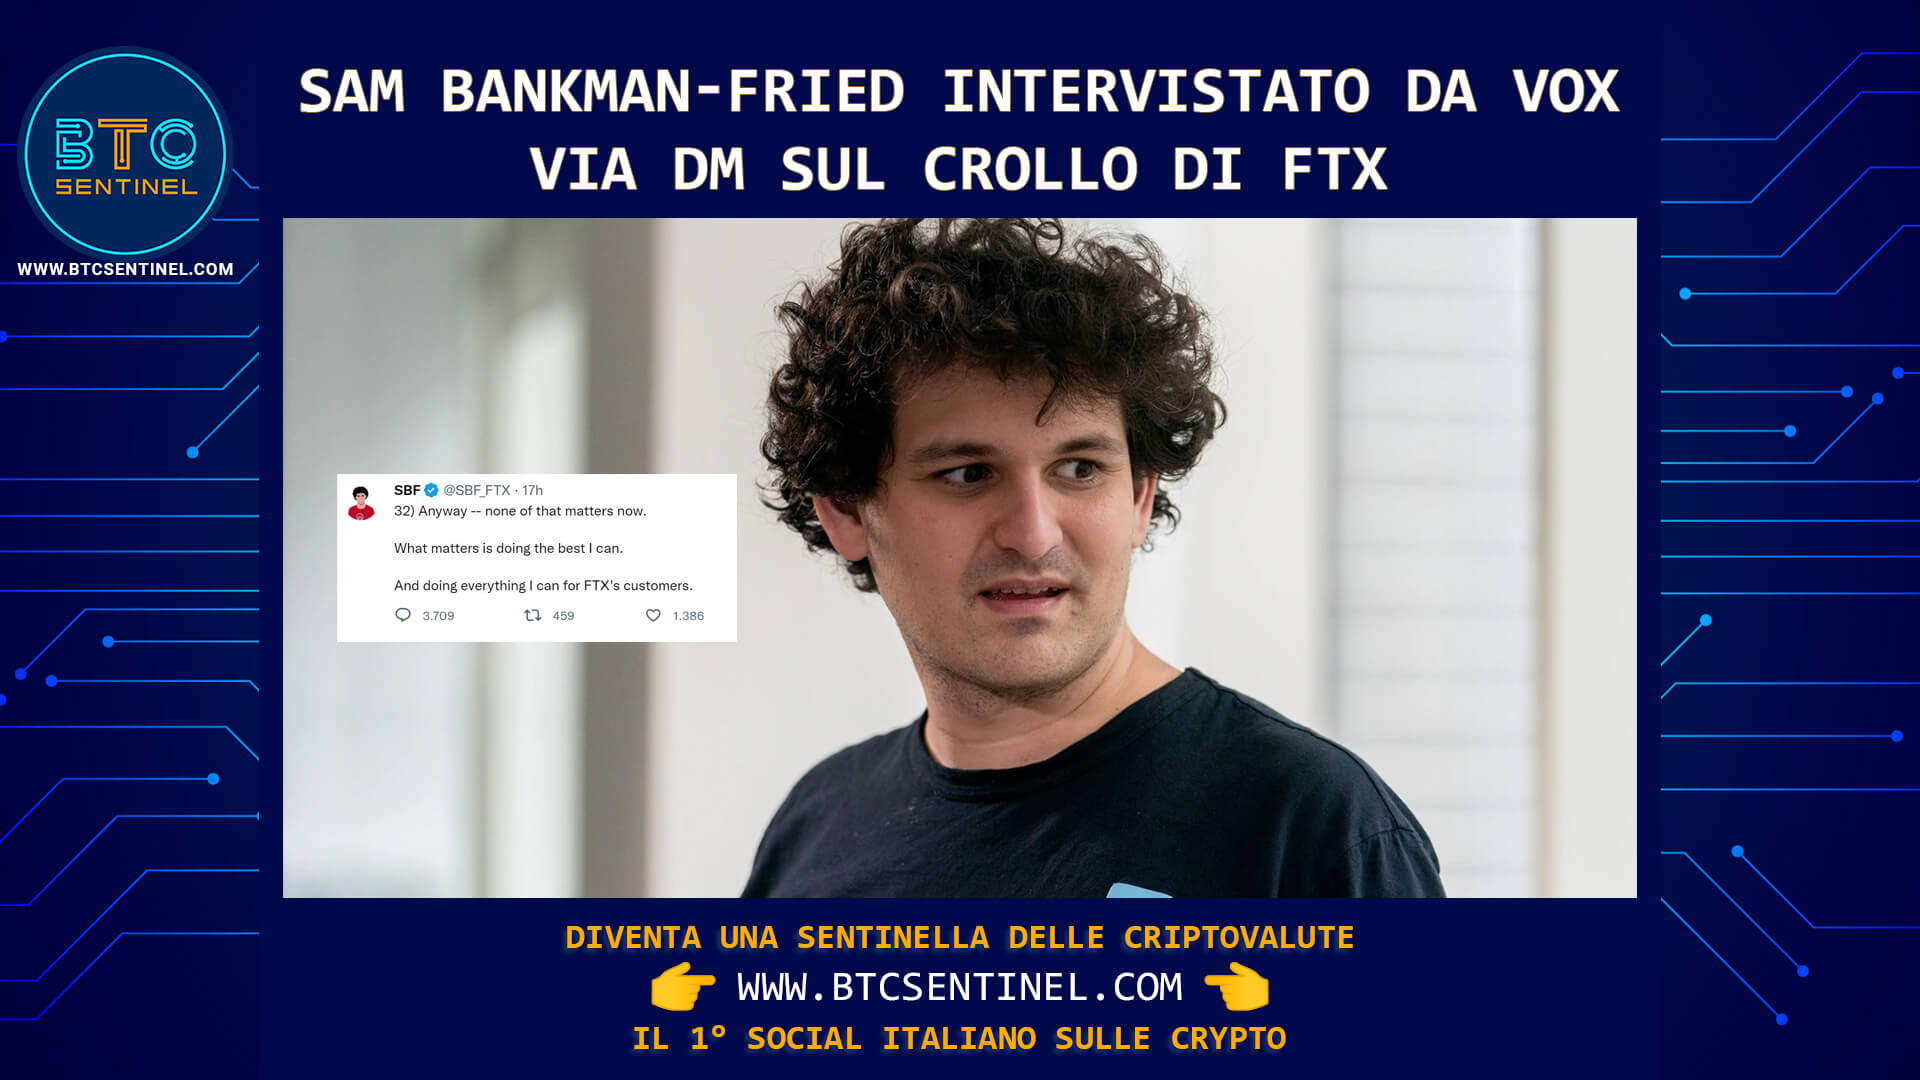 Sam Bankman-Fried intervistato da VOX sul crollo di FTX